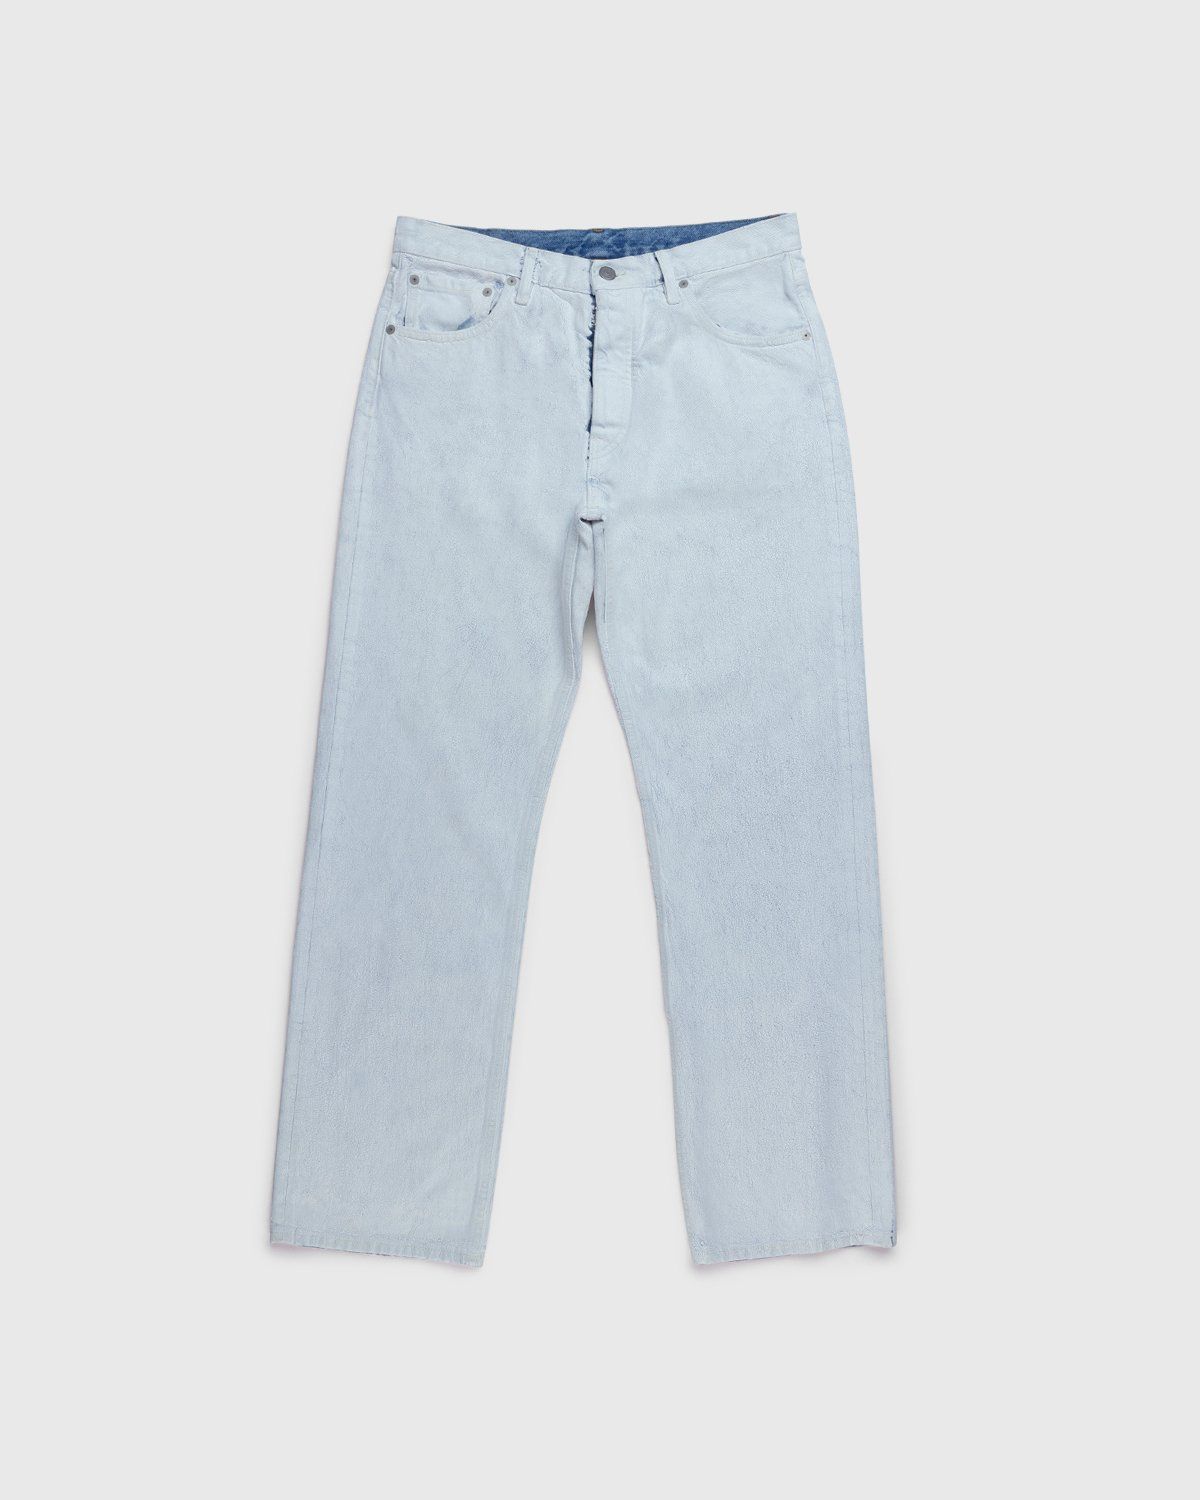 Maison Margiela – Bianchetto Boyfriend Jeans White - Pants - White - Image 1